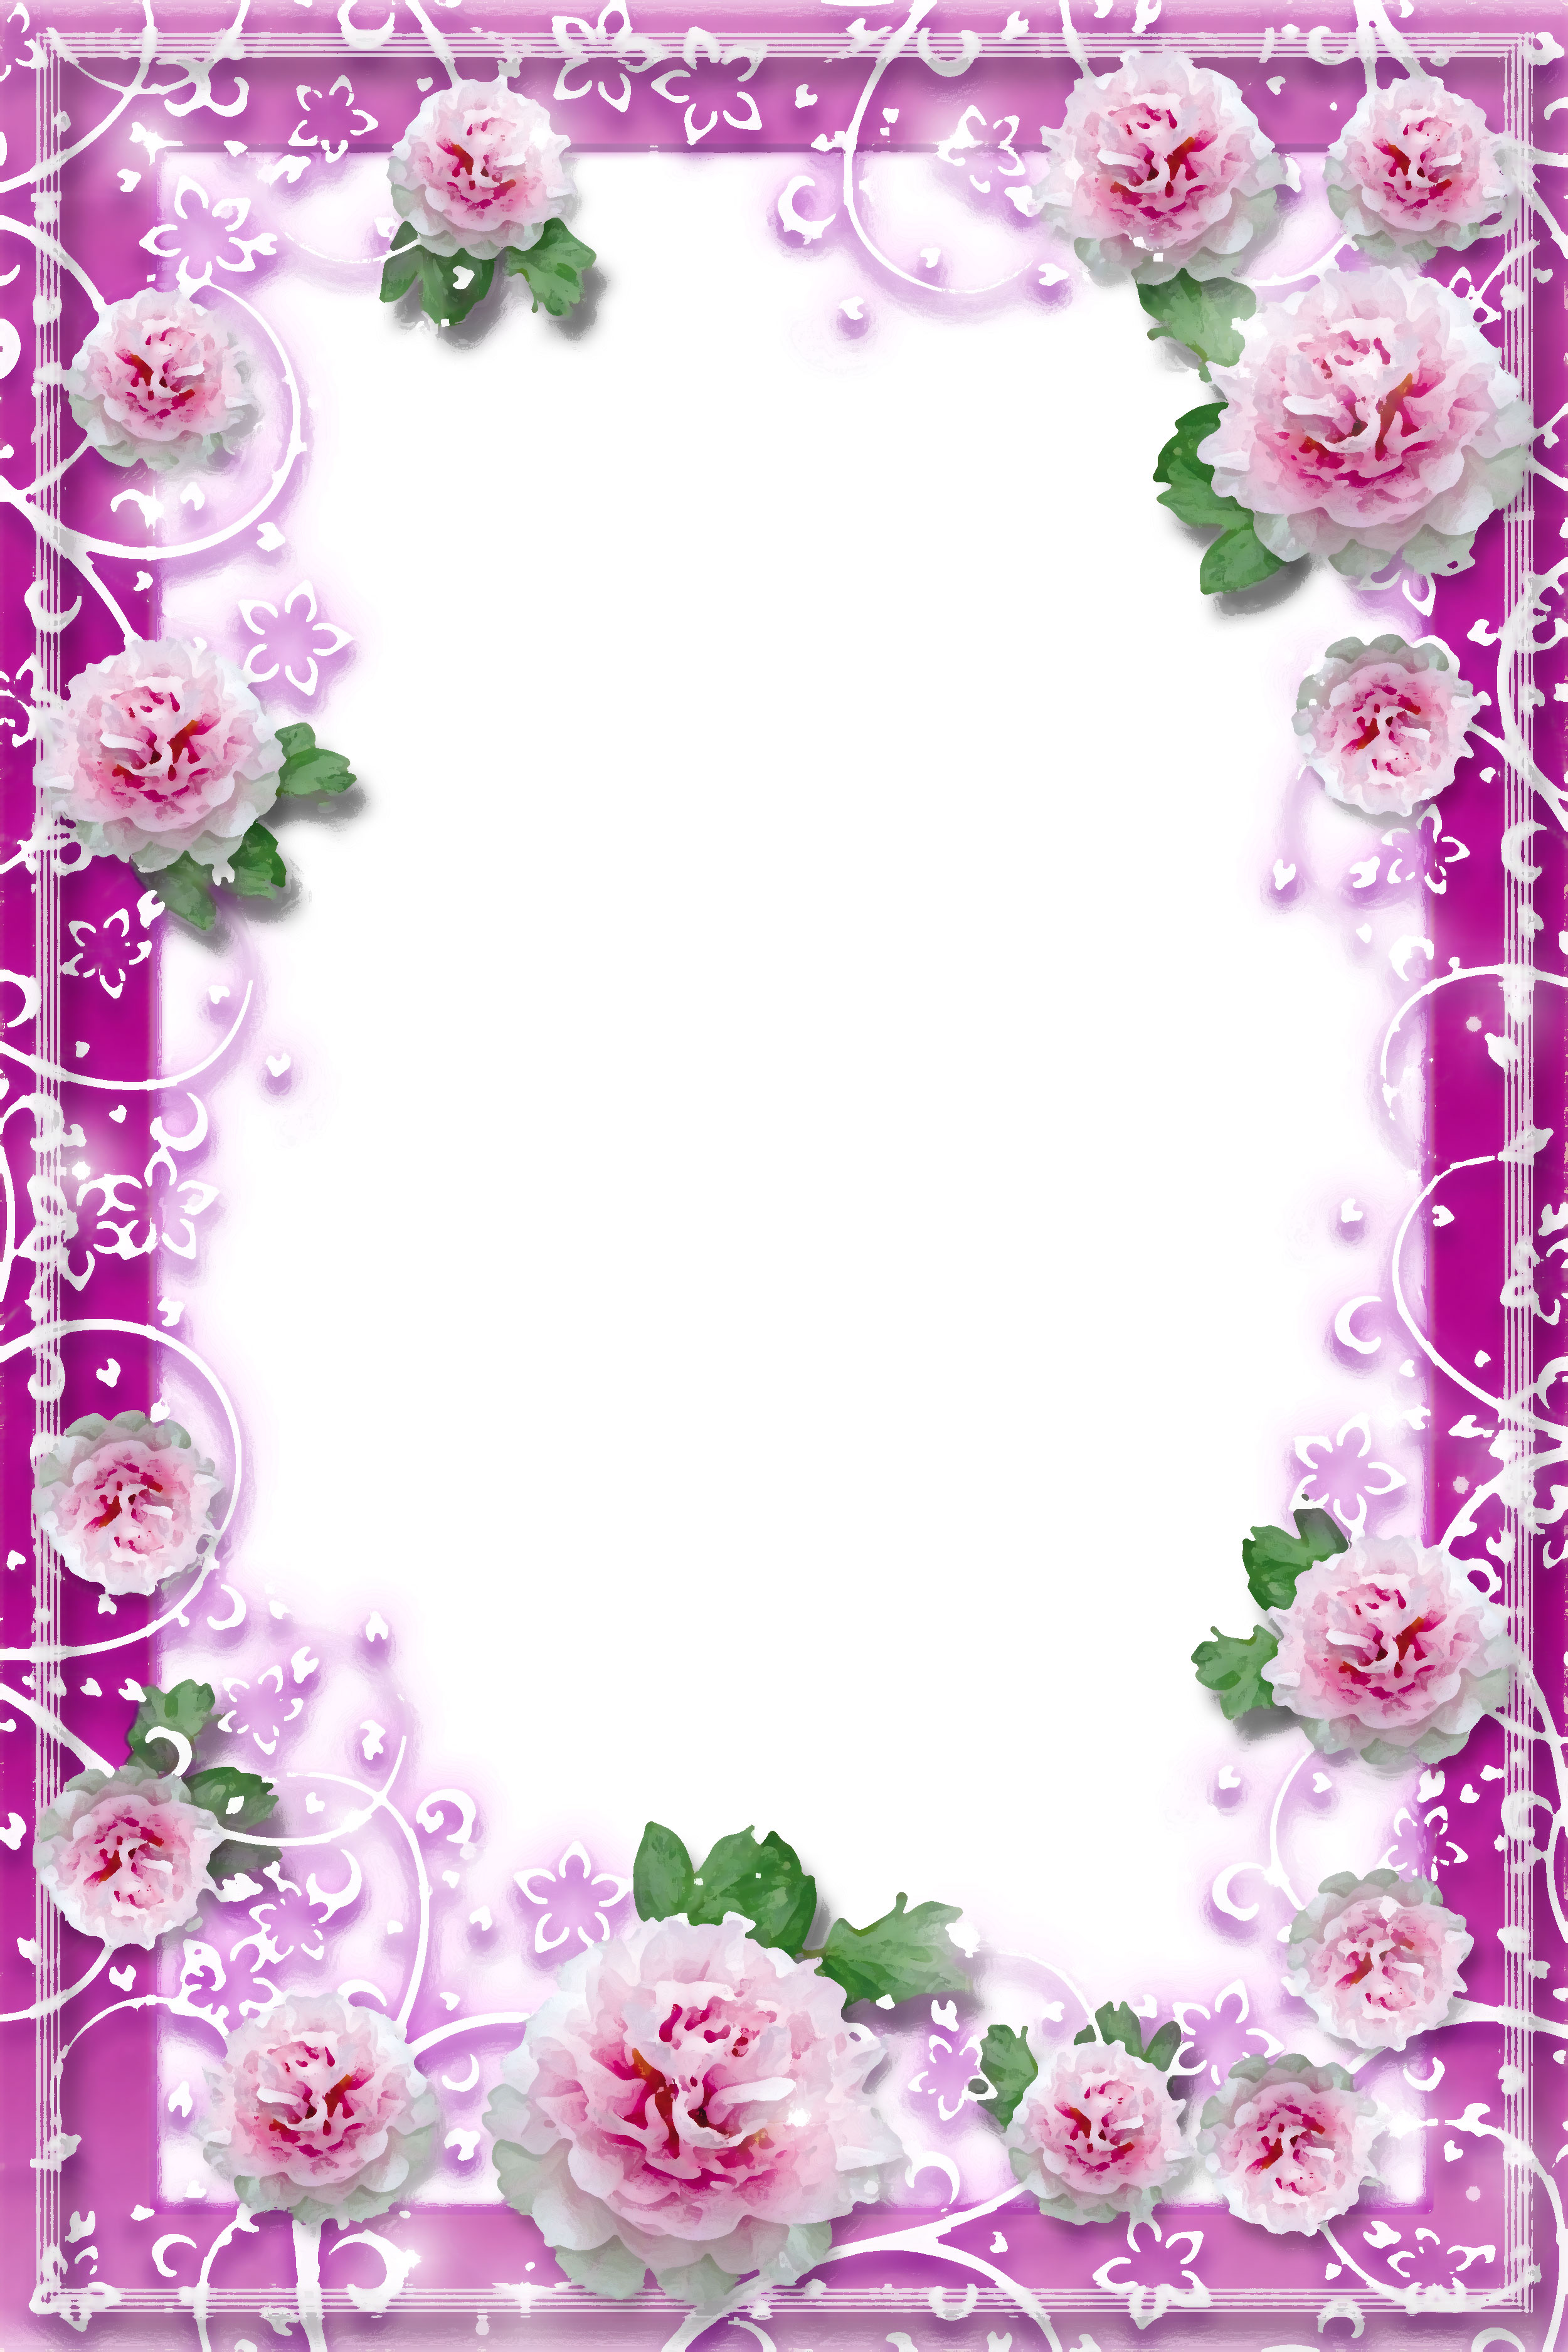 壁紙 背景イラスト 花のフレーム 外枠 No 045 白 紫 額縁